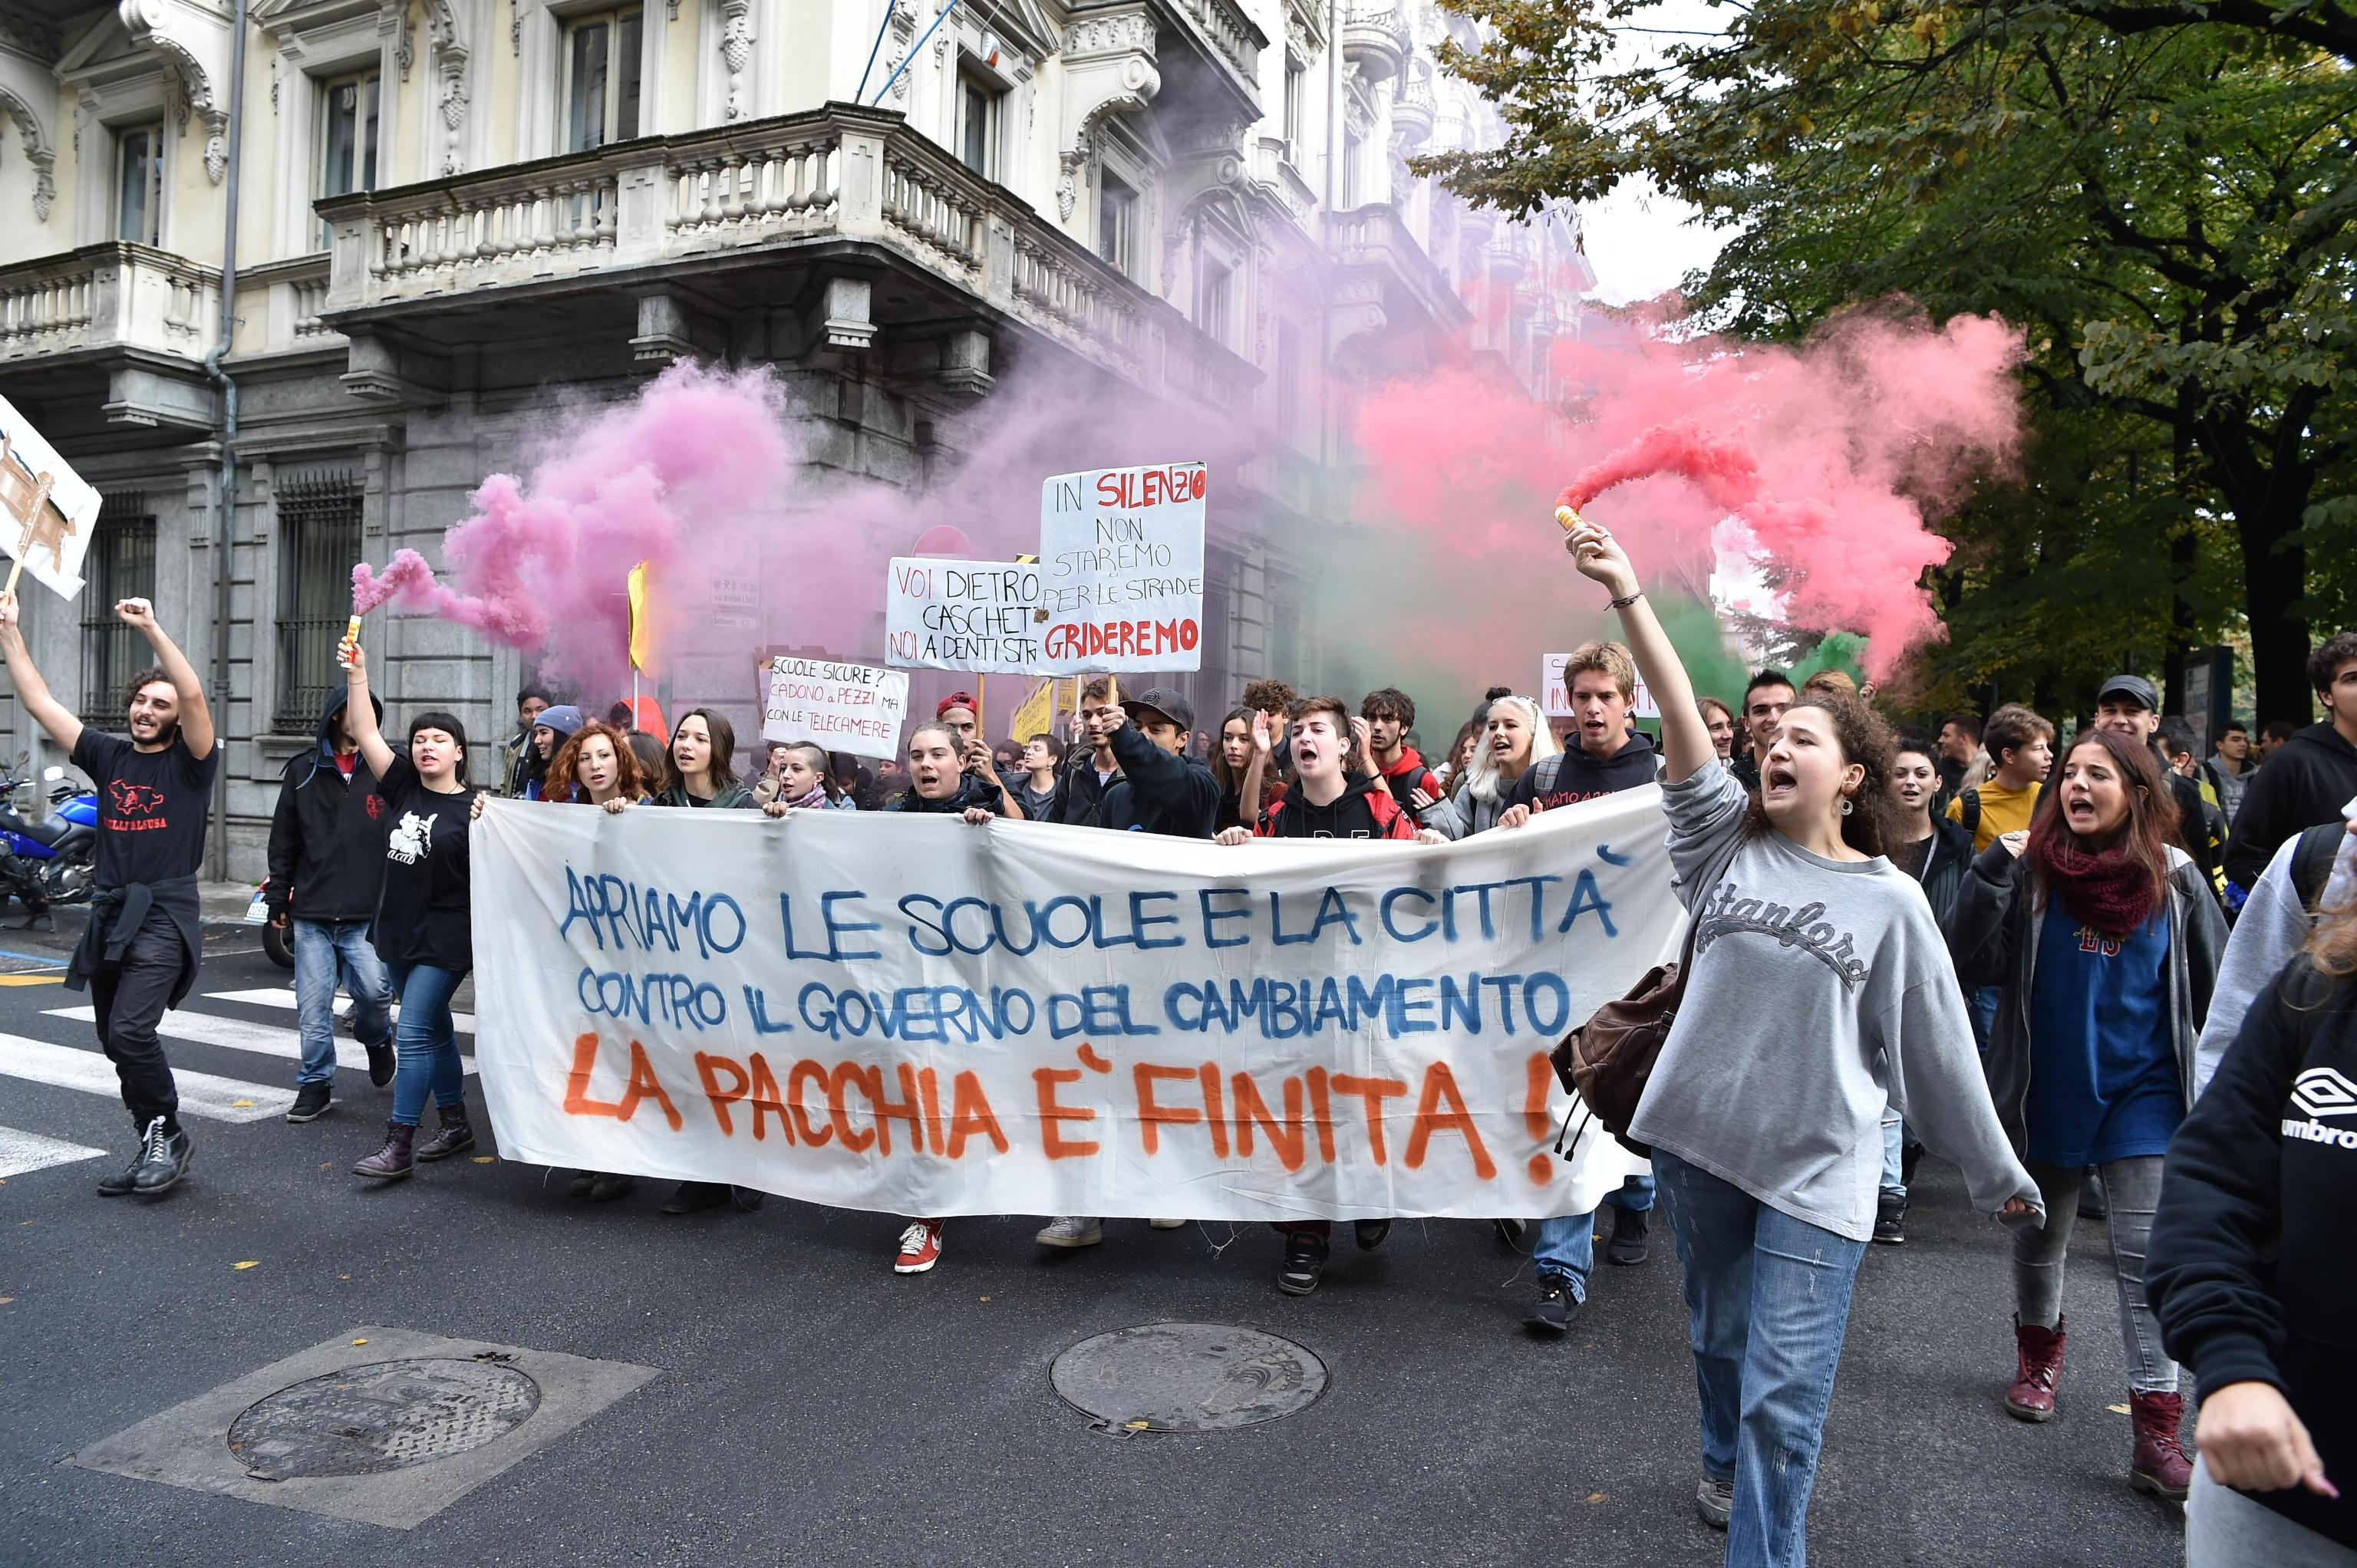 Centinaia di studenti sono scesi in strada anche Torino per protestare "contro razzismo, finto governo del cambiamento e disuguaglianze"